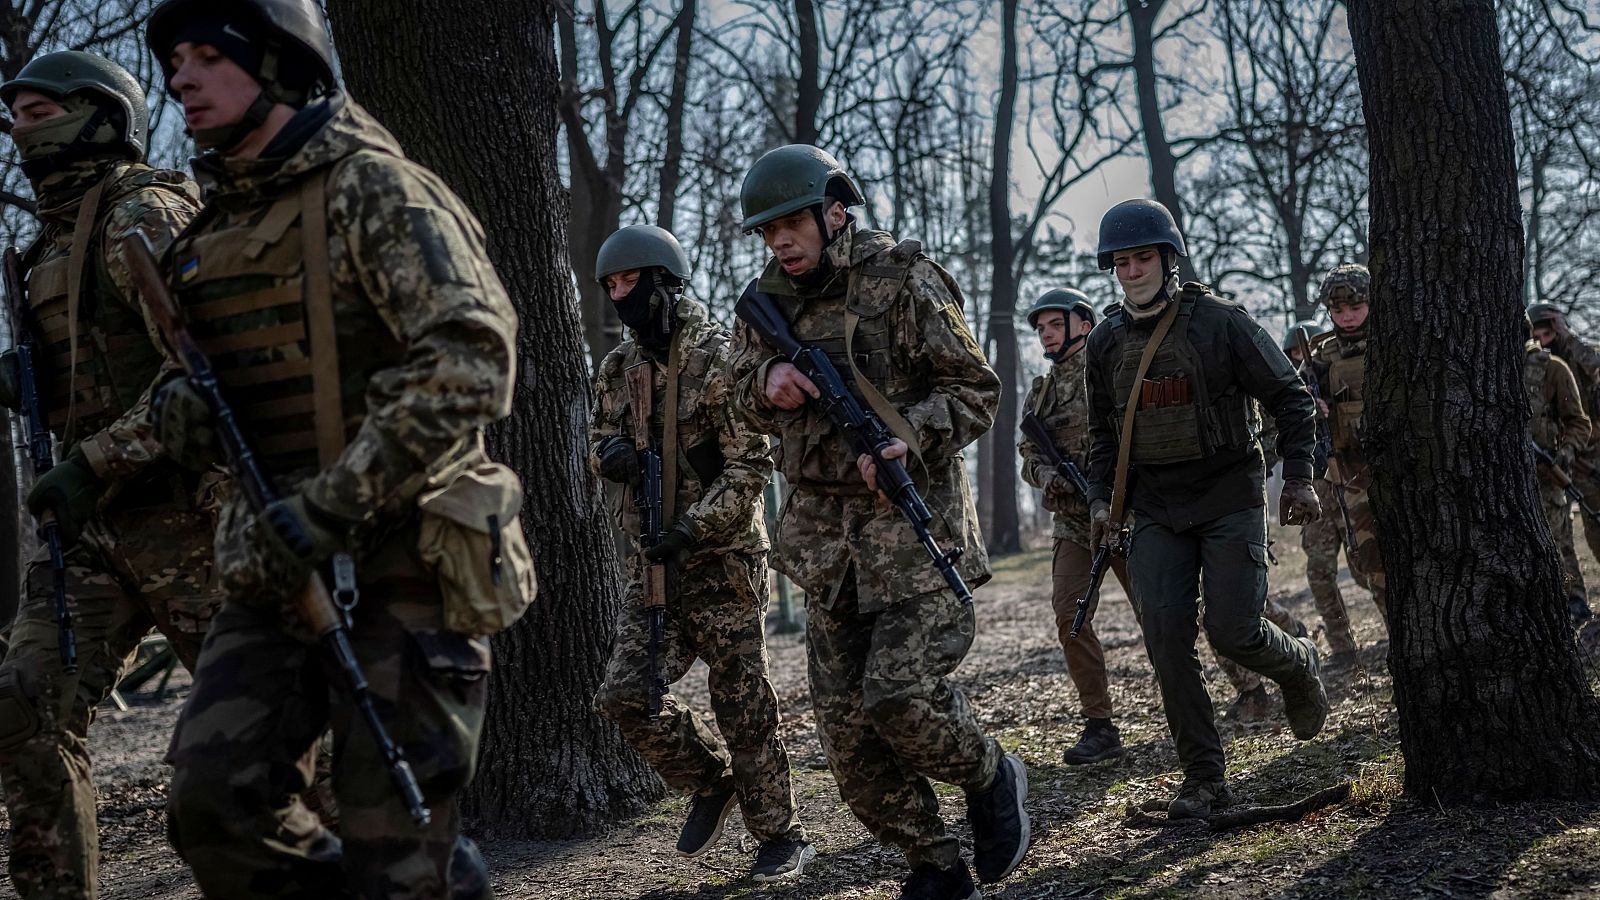 Voluntarios ucranianos entrenando para combatir en el frente de batalla